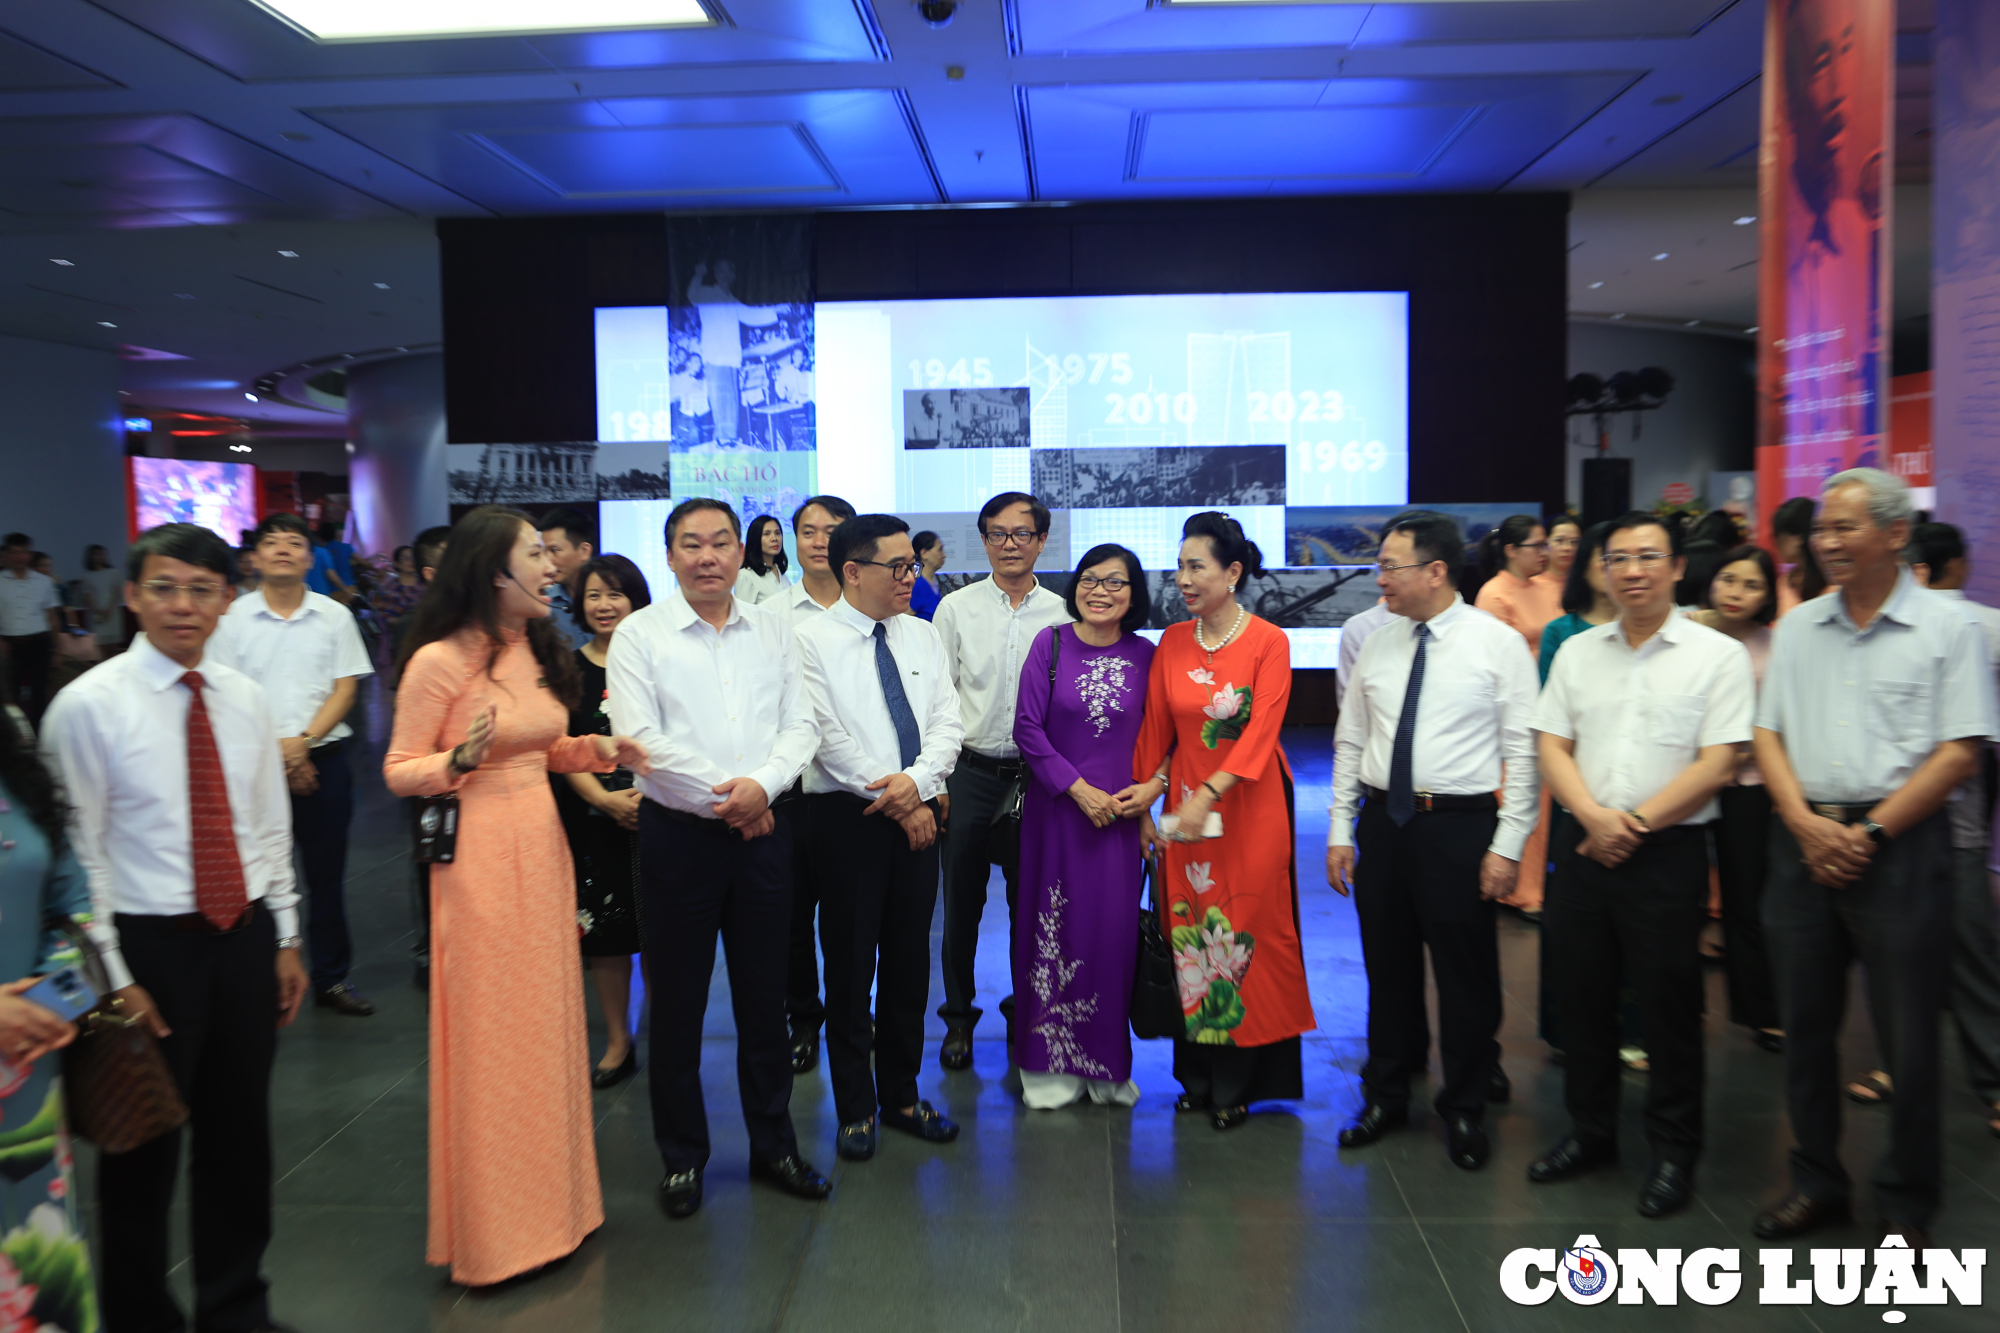 Lãnh đạo, khách mời tham quan không gian trưng bày chuyên đề "Bác Hồ với Thủ đô Hà Nội" và Không gian nghệ thuật "Sen thư pháp".